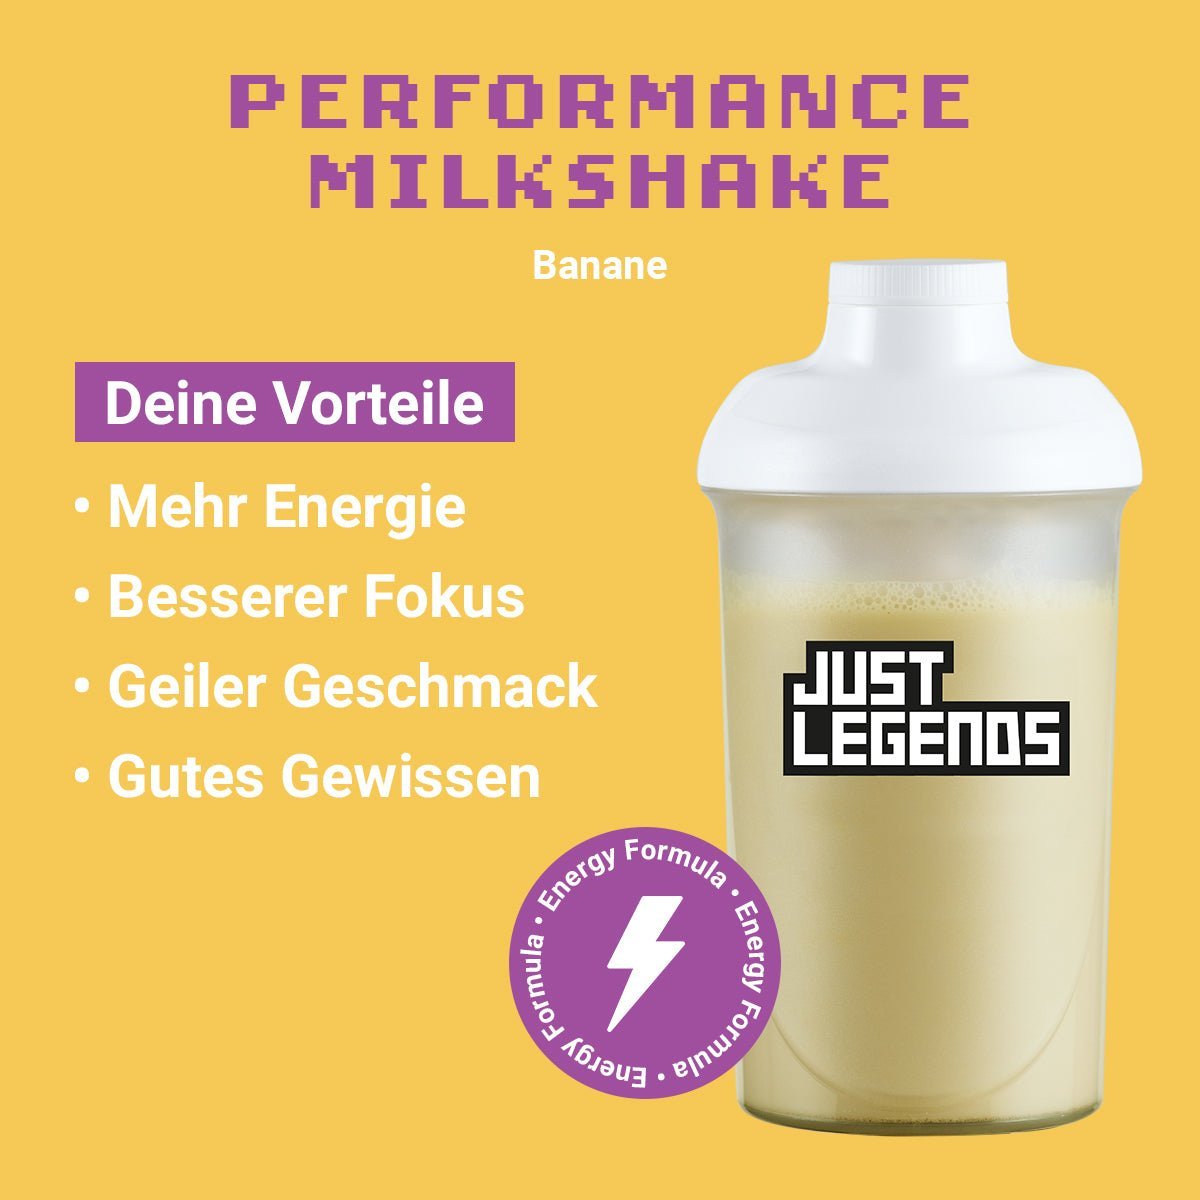 Just Legends Performance Milkshake Banana | Funktionaler, veganer Performance Milkshake auf Pulverbasis ohne Zucker, mit wenig Kalorien, vielen Vitaminen und natürlichen Aromen.